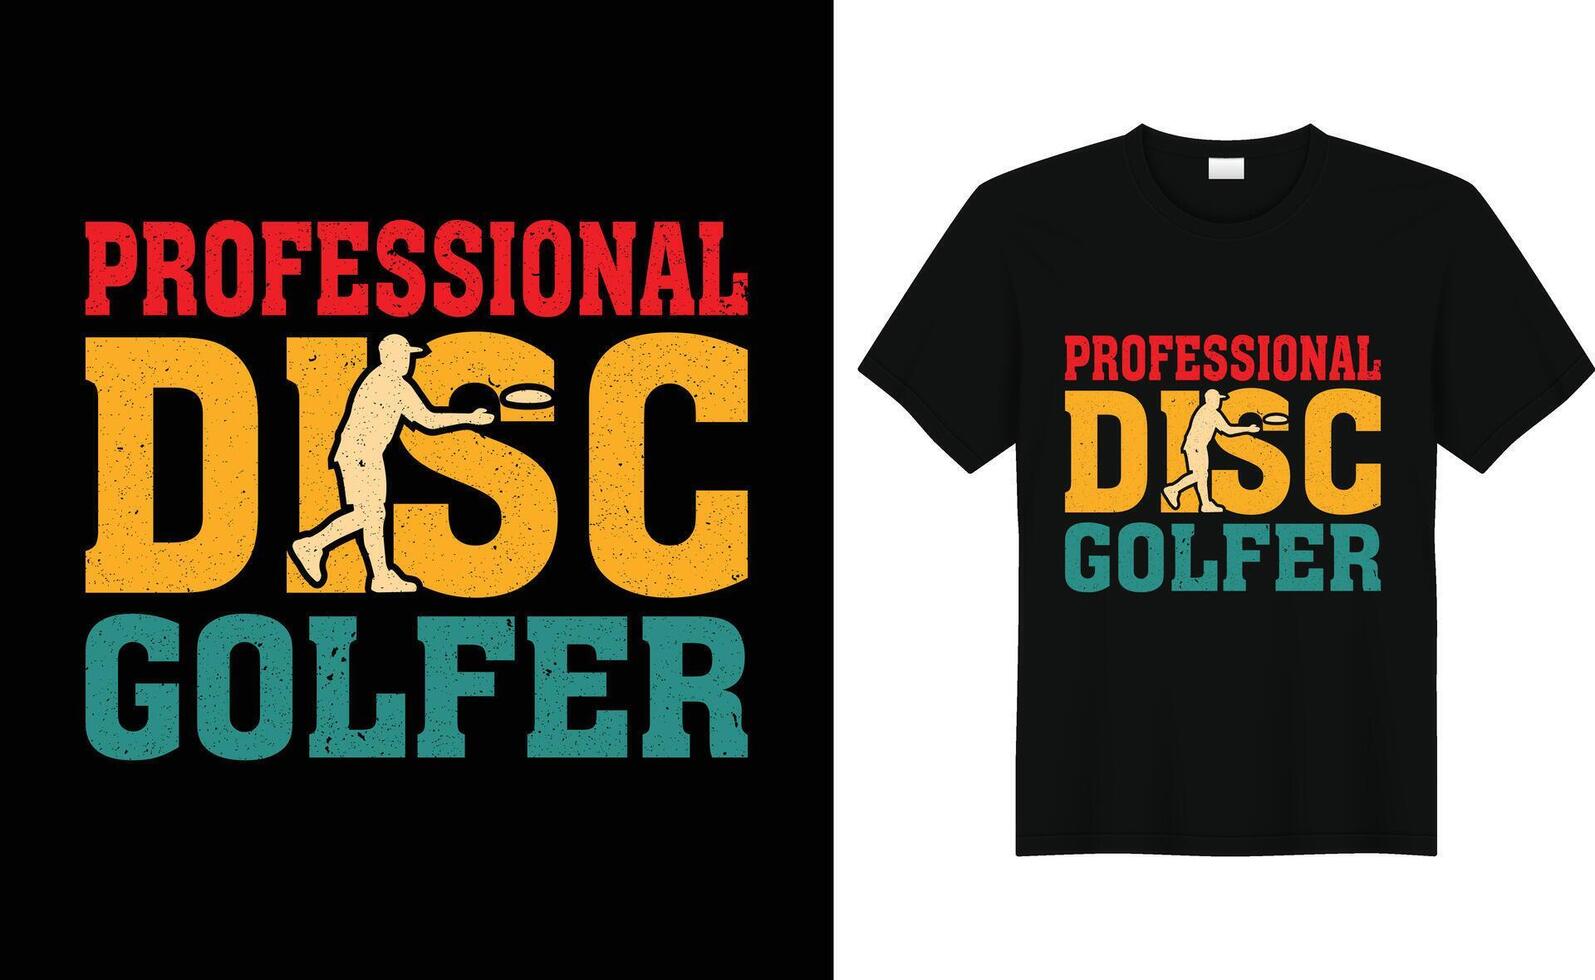 disco golfe vetor camiseta poster caneca Projeto vetor